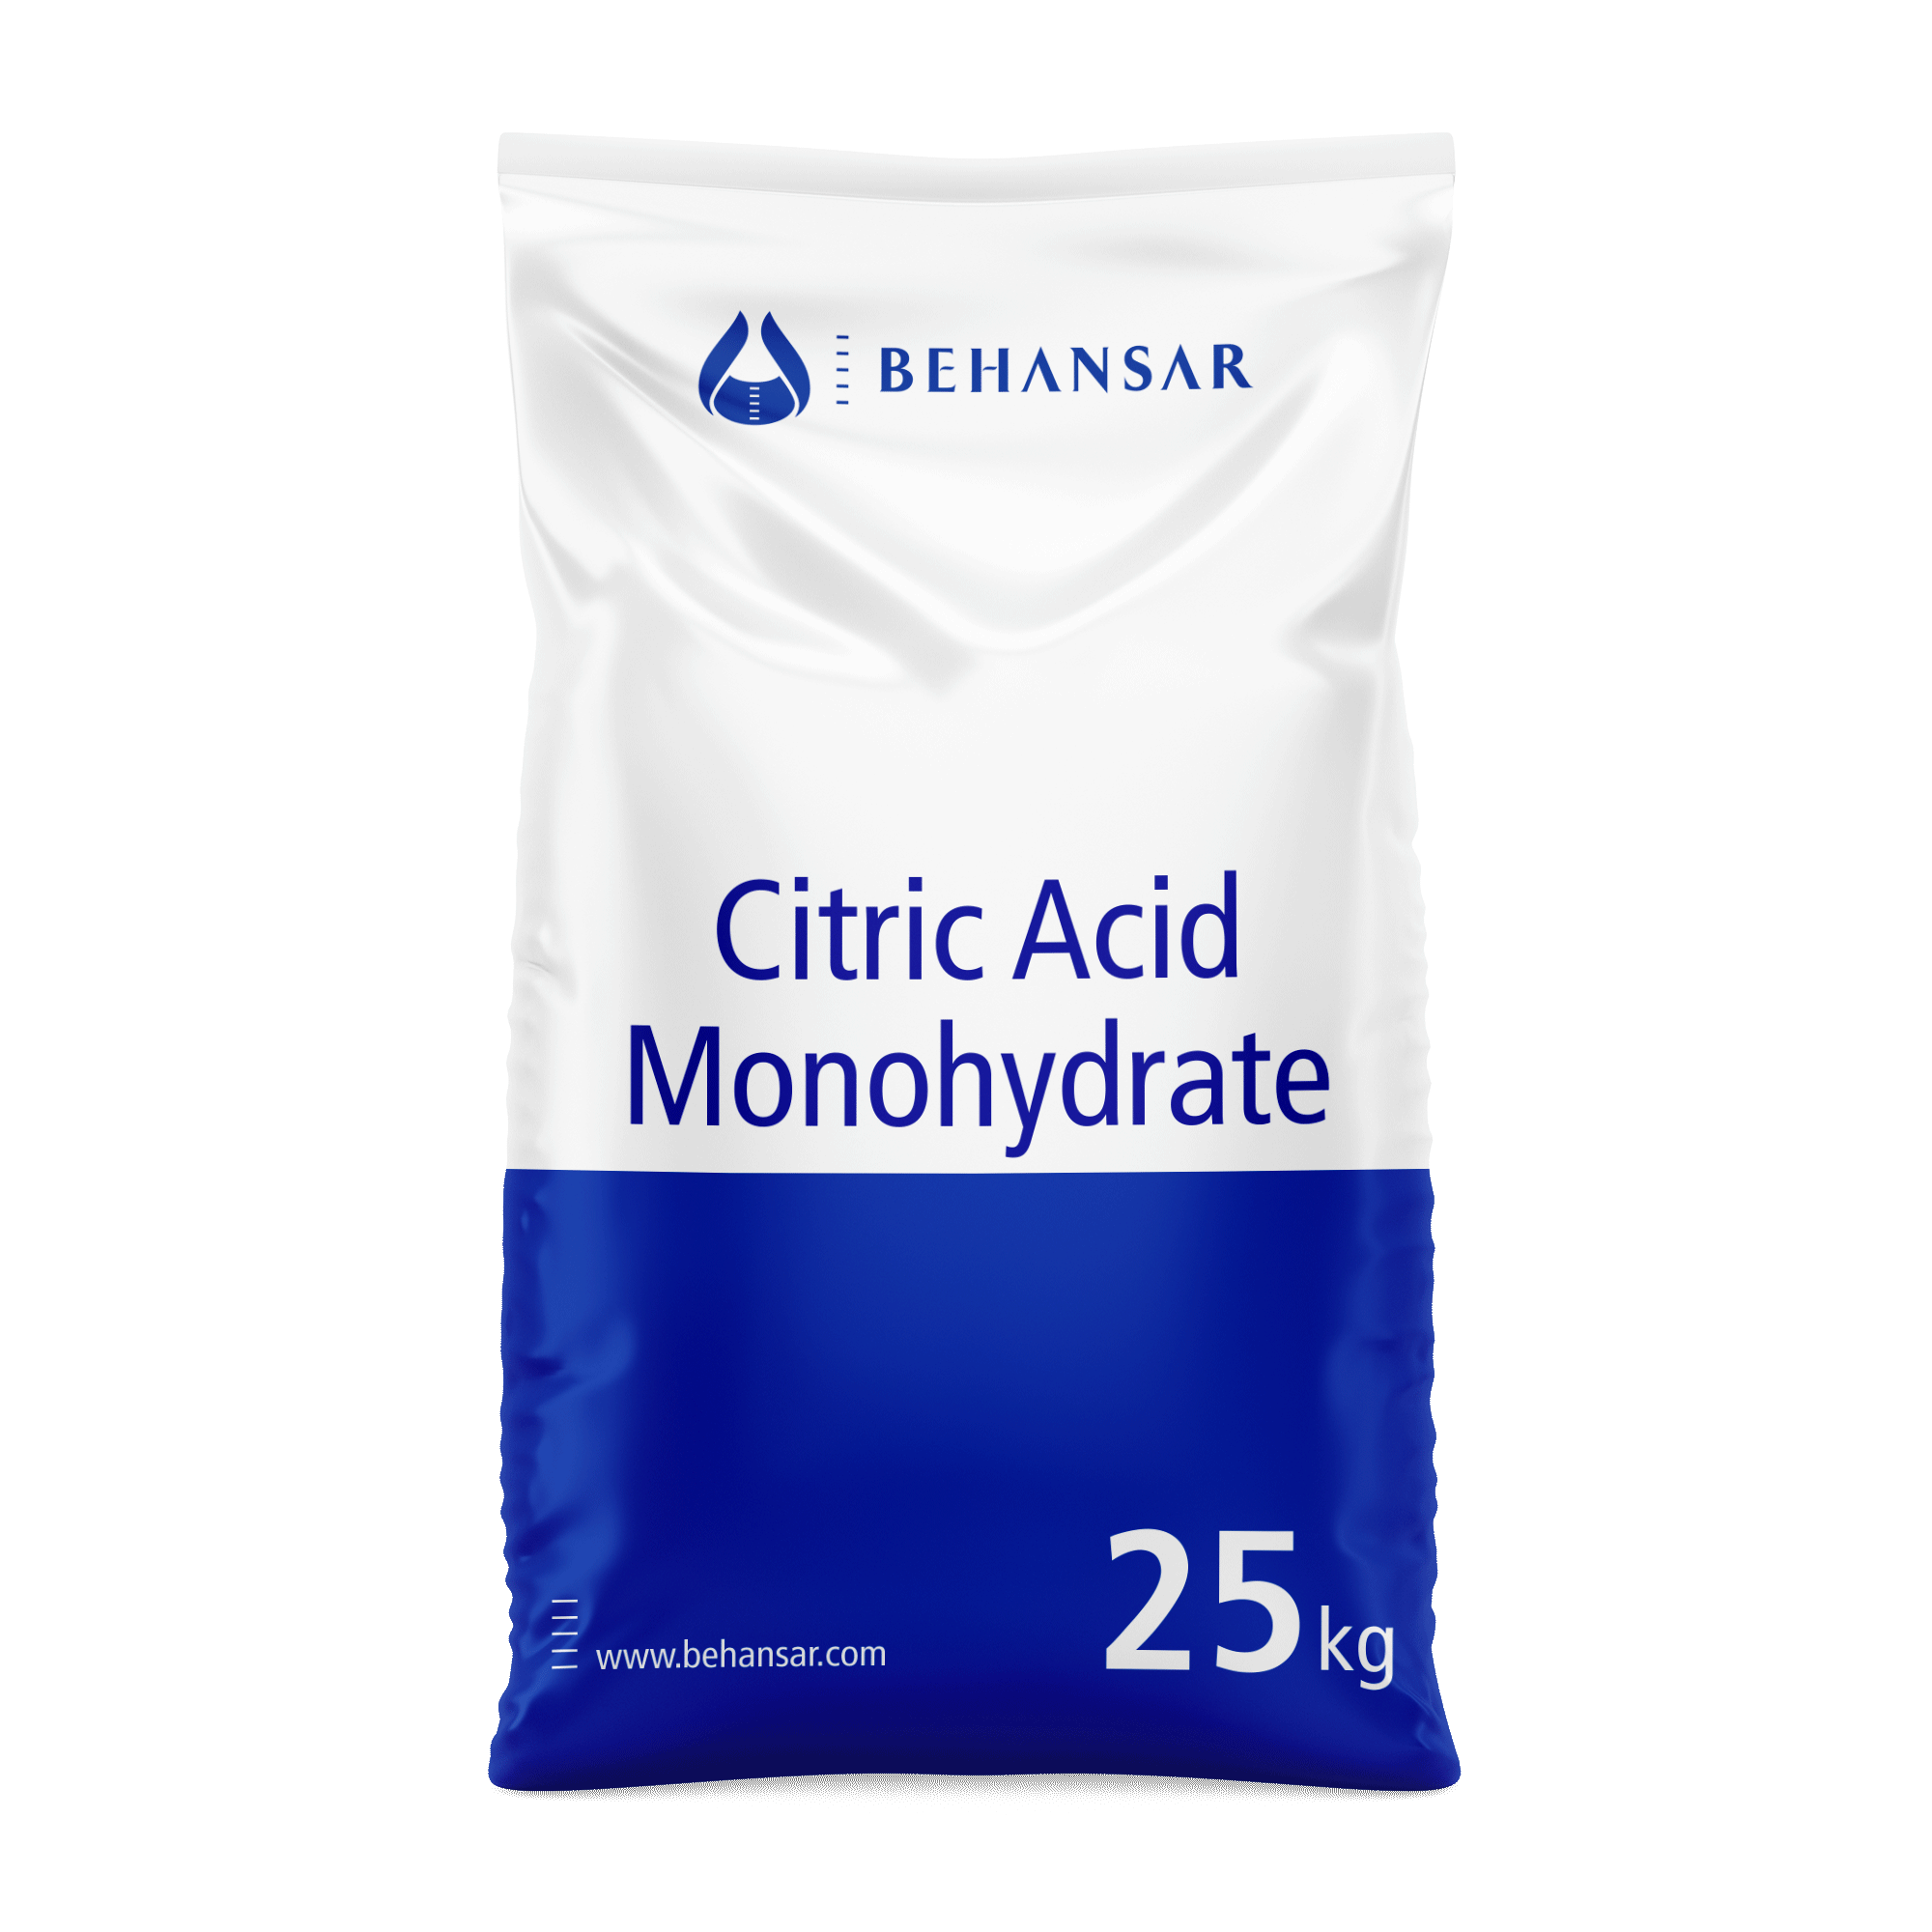 سیتریک اسید مونو هیدرات یکی از تولیدات شرکت بهانسار است